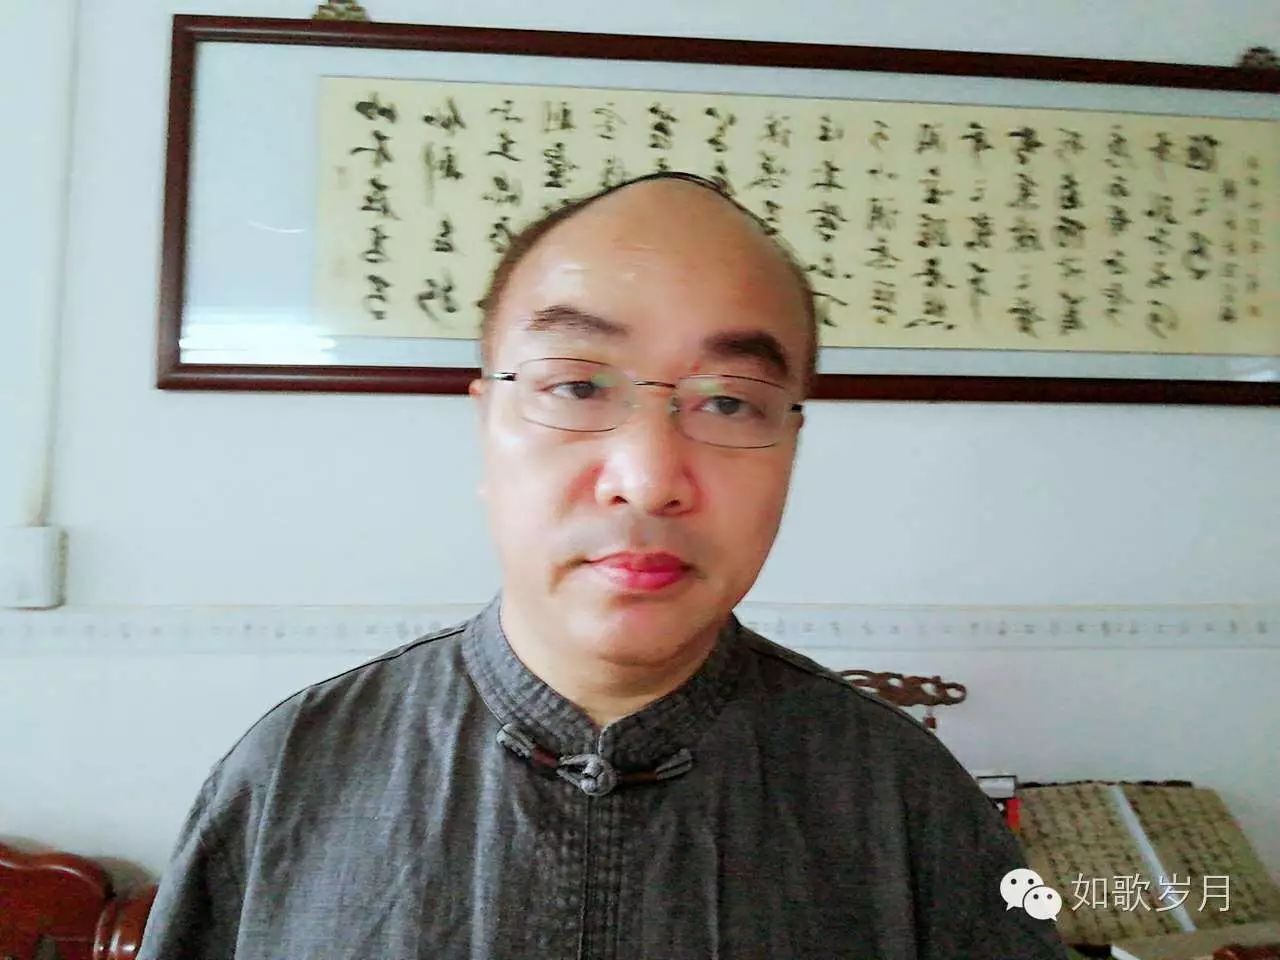 籍贯湖南醴陵,1962年生于陆丰东海,现为陆丰市林启恩纪念中学语文教师